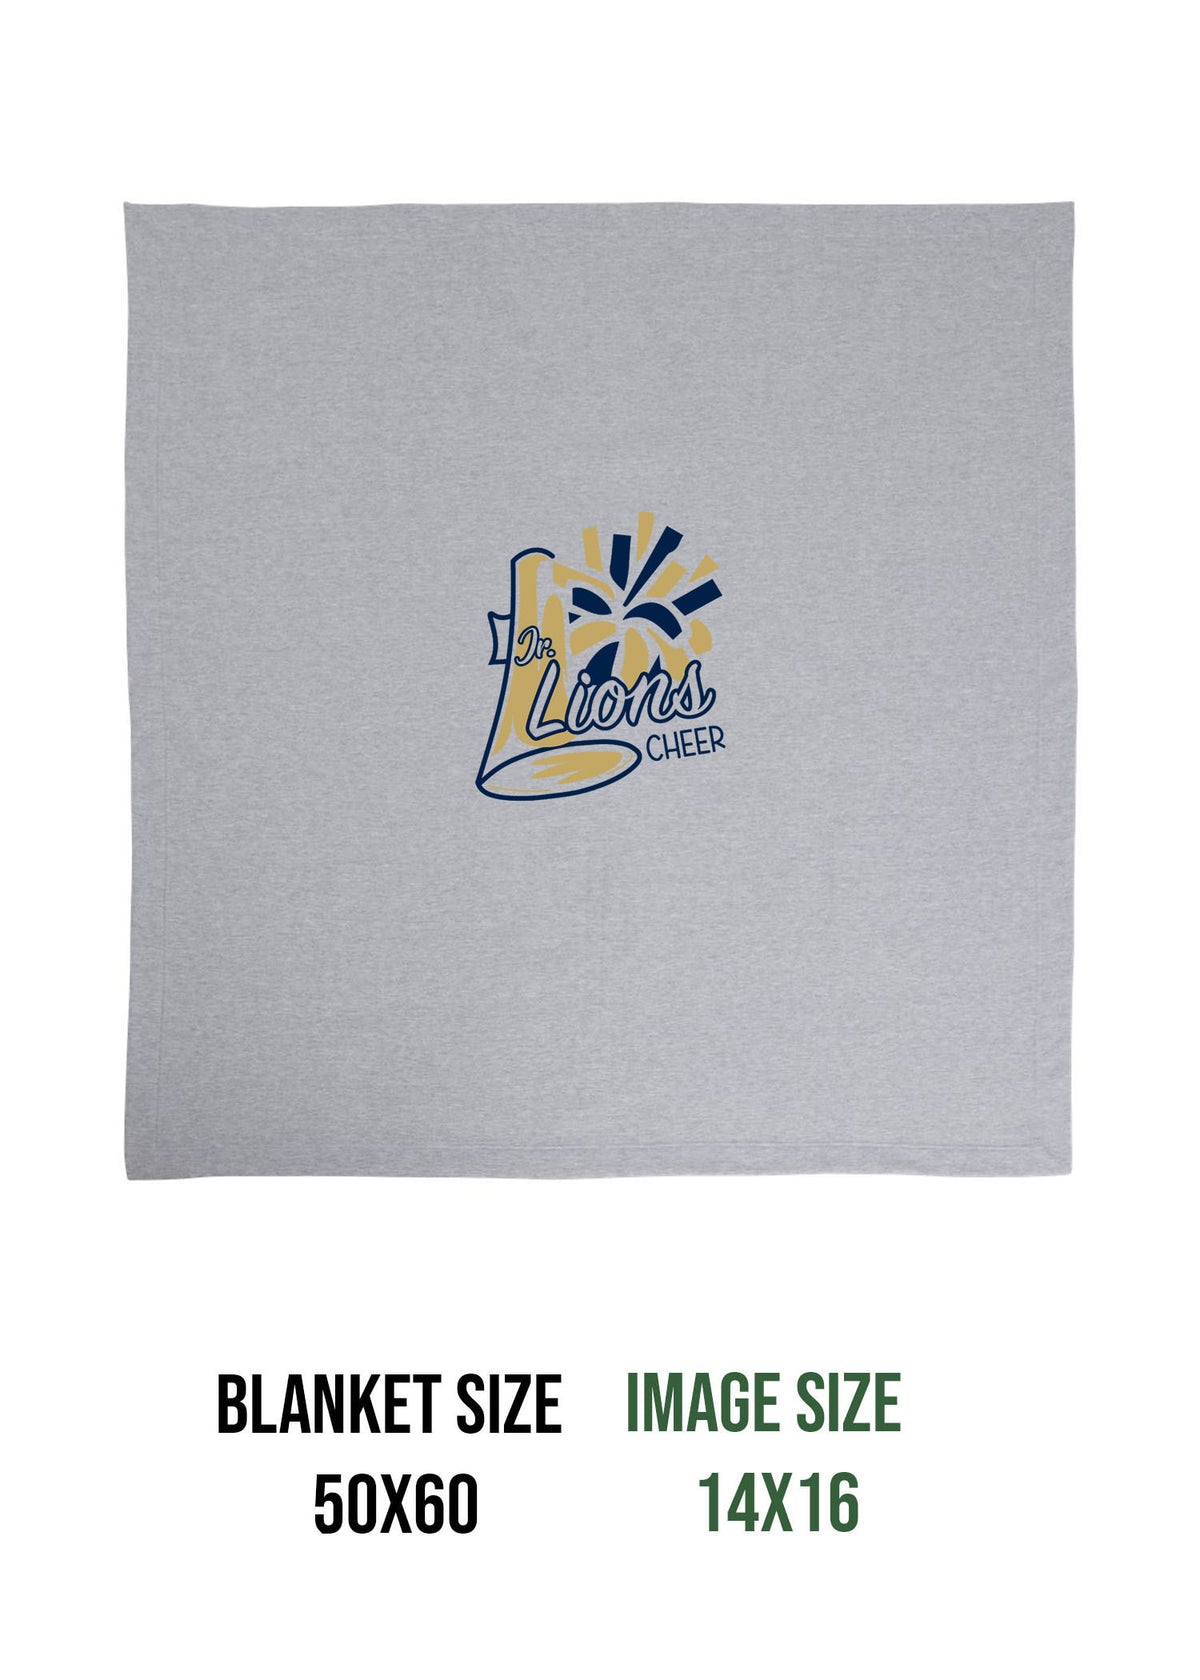 Lions Cheer Design 2 Blanket